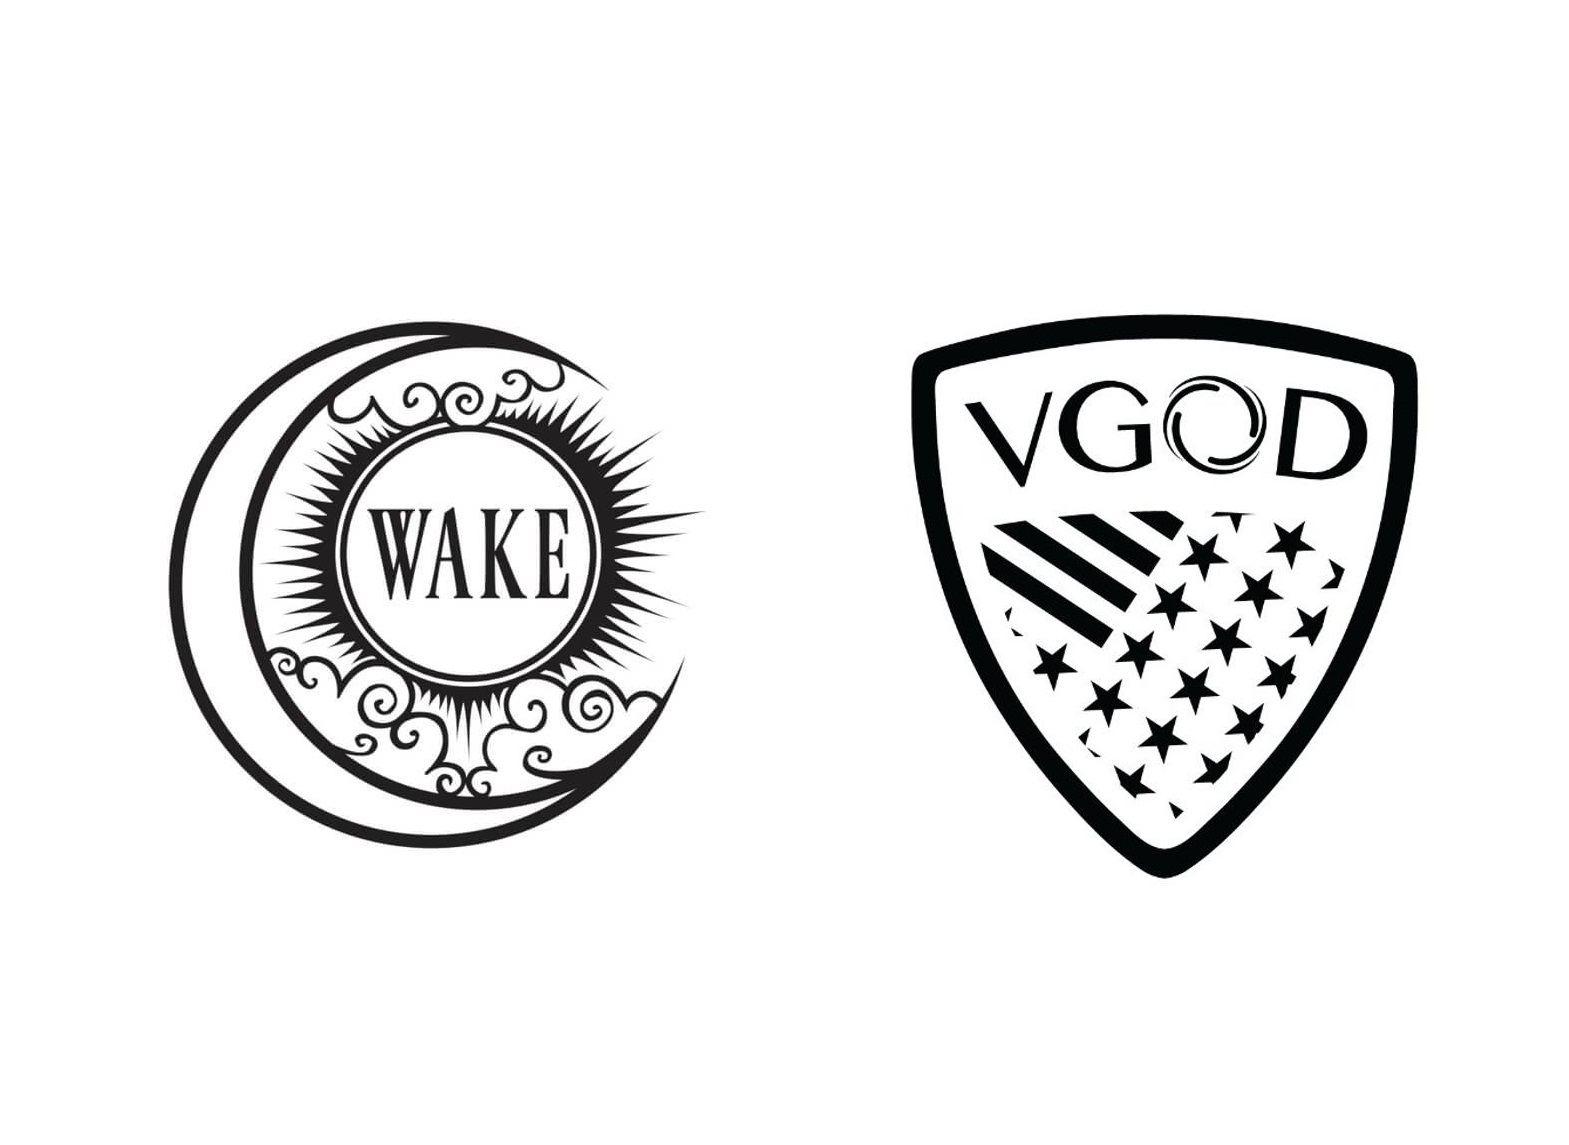 Новые старые предложения - Wake Mod Co Littlefoot Kit и Vgod Pro Subtank...